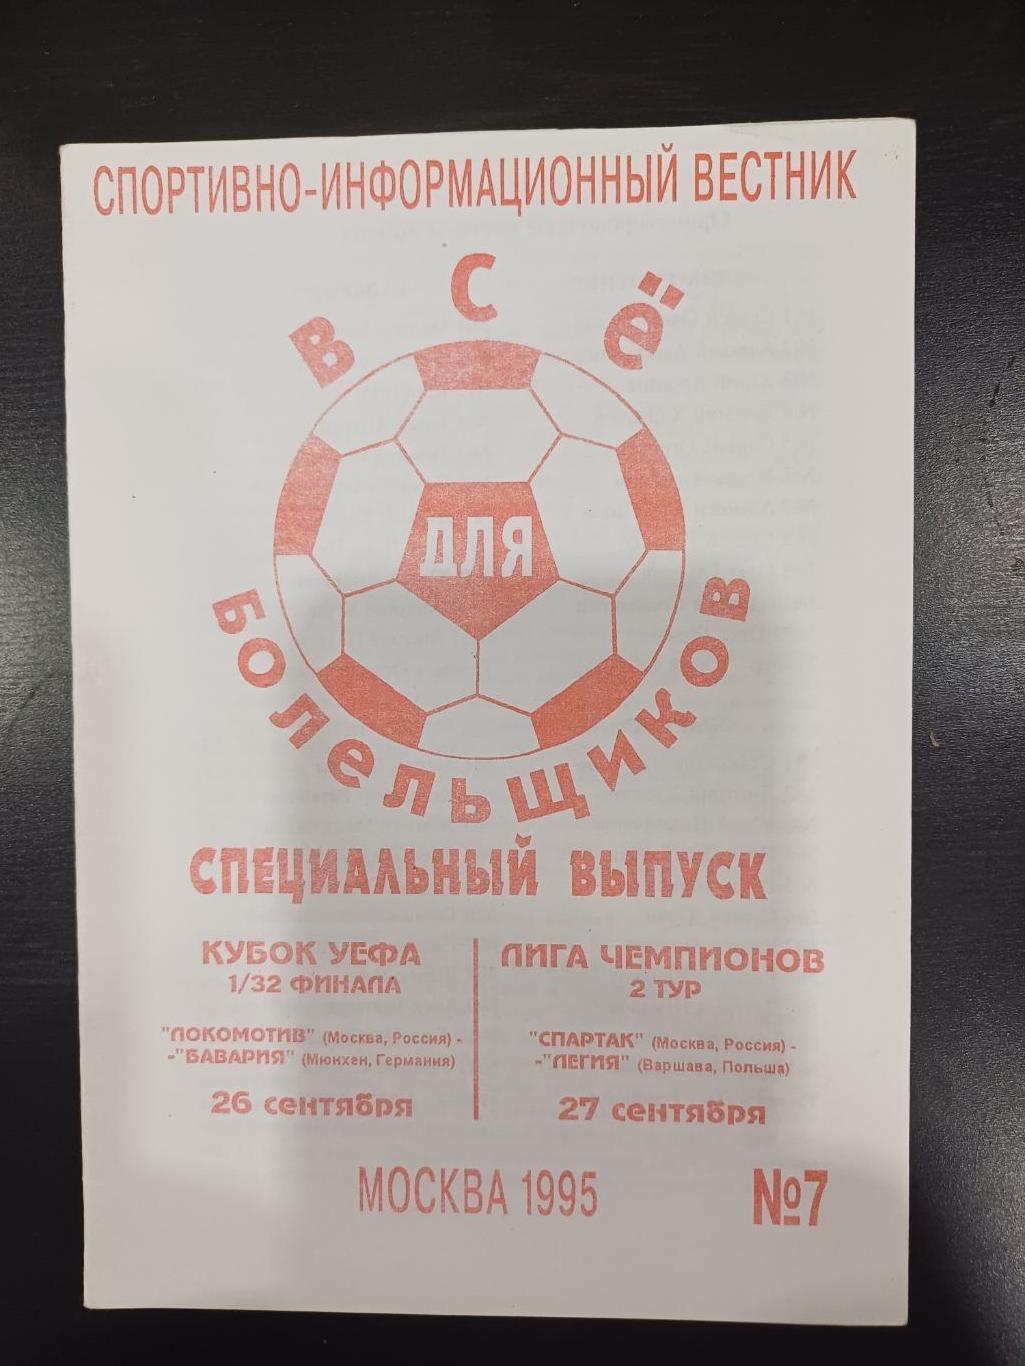 Локомотив - Бавария Спартак - Легия 1995